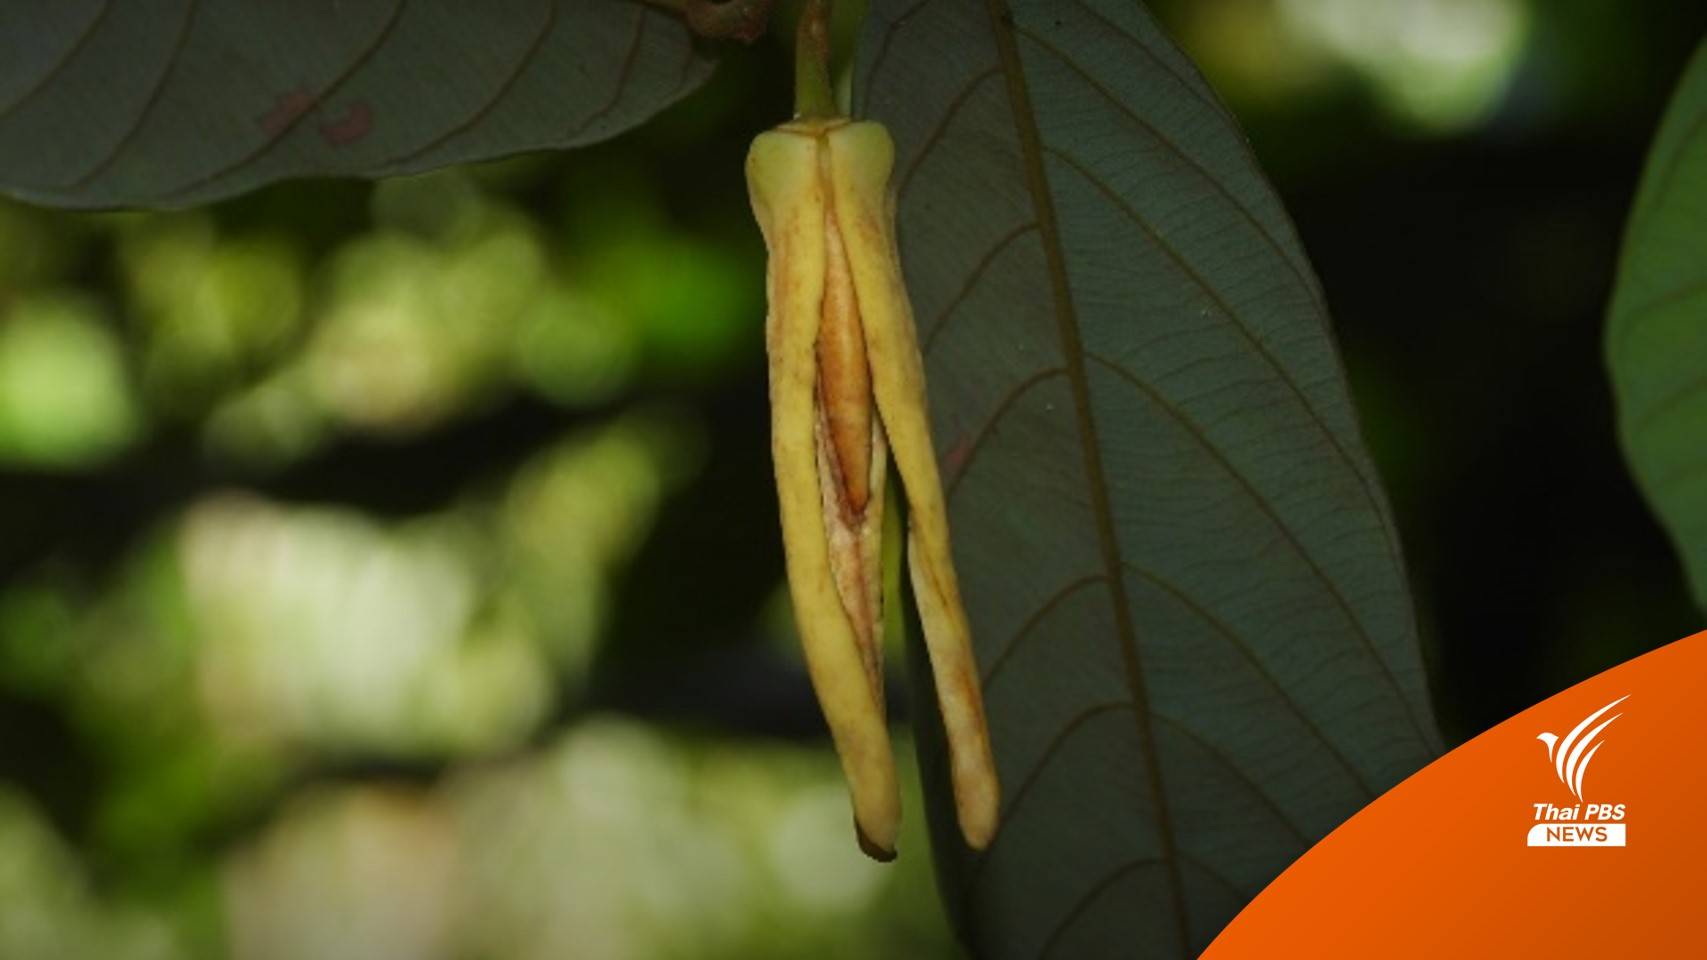 นักวิจัย มช.ค้นพบ “บุหงาลลิษา” พืชดอกหอมชนิดใหม่ของโลก